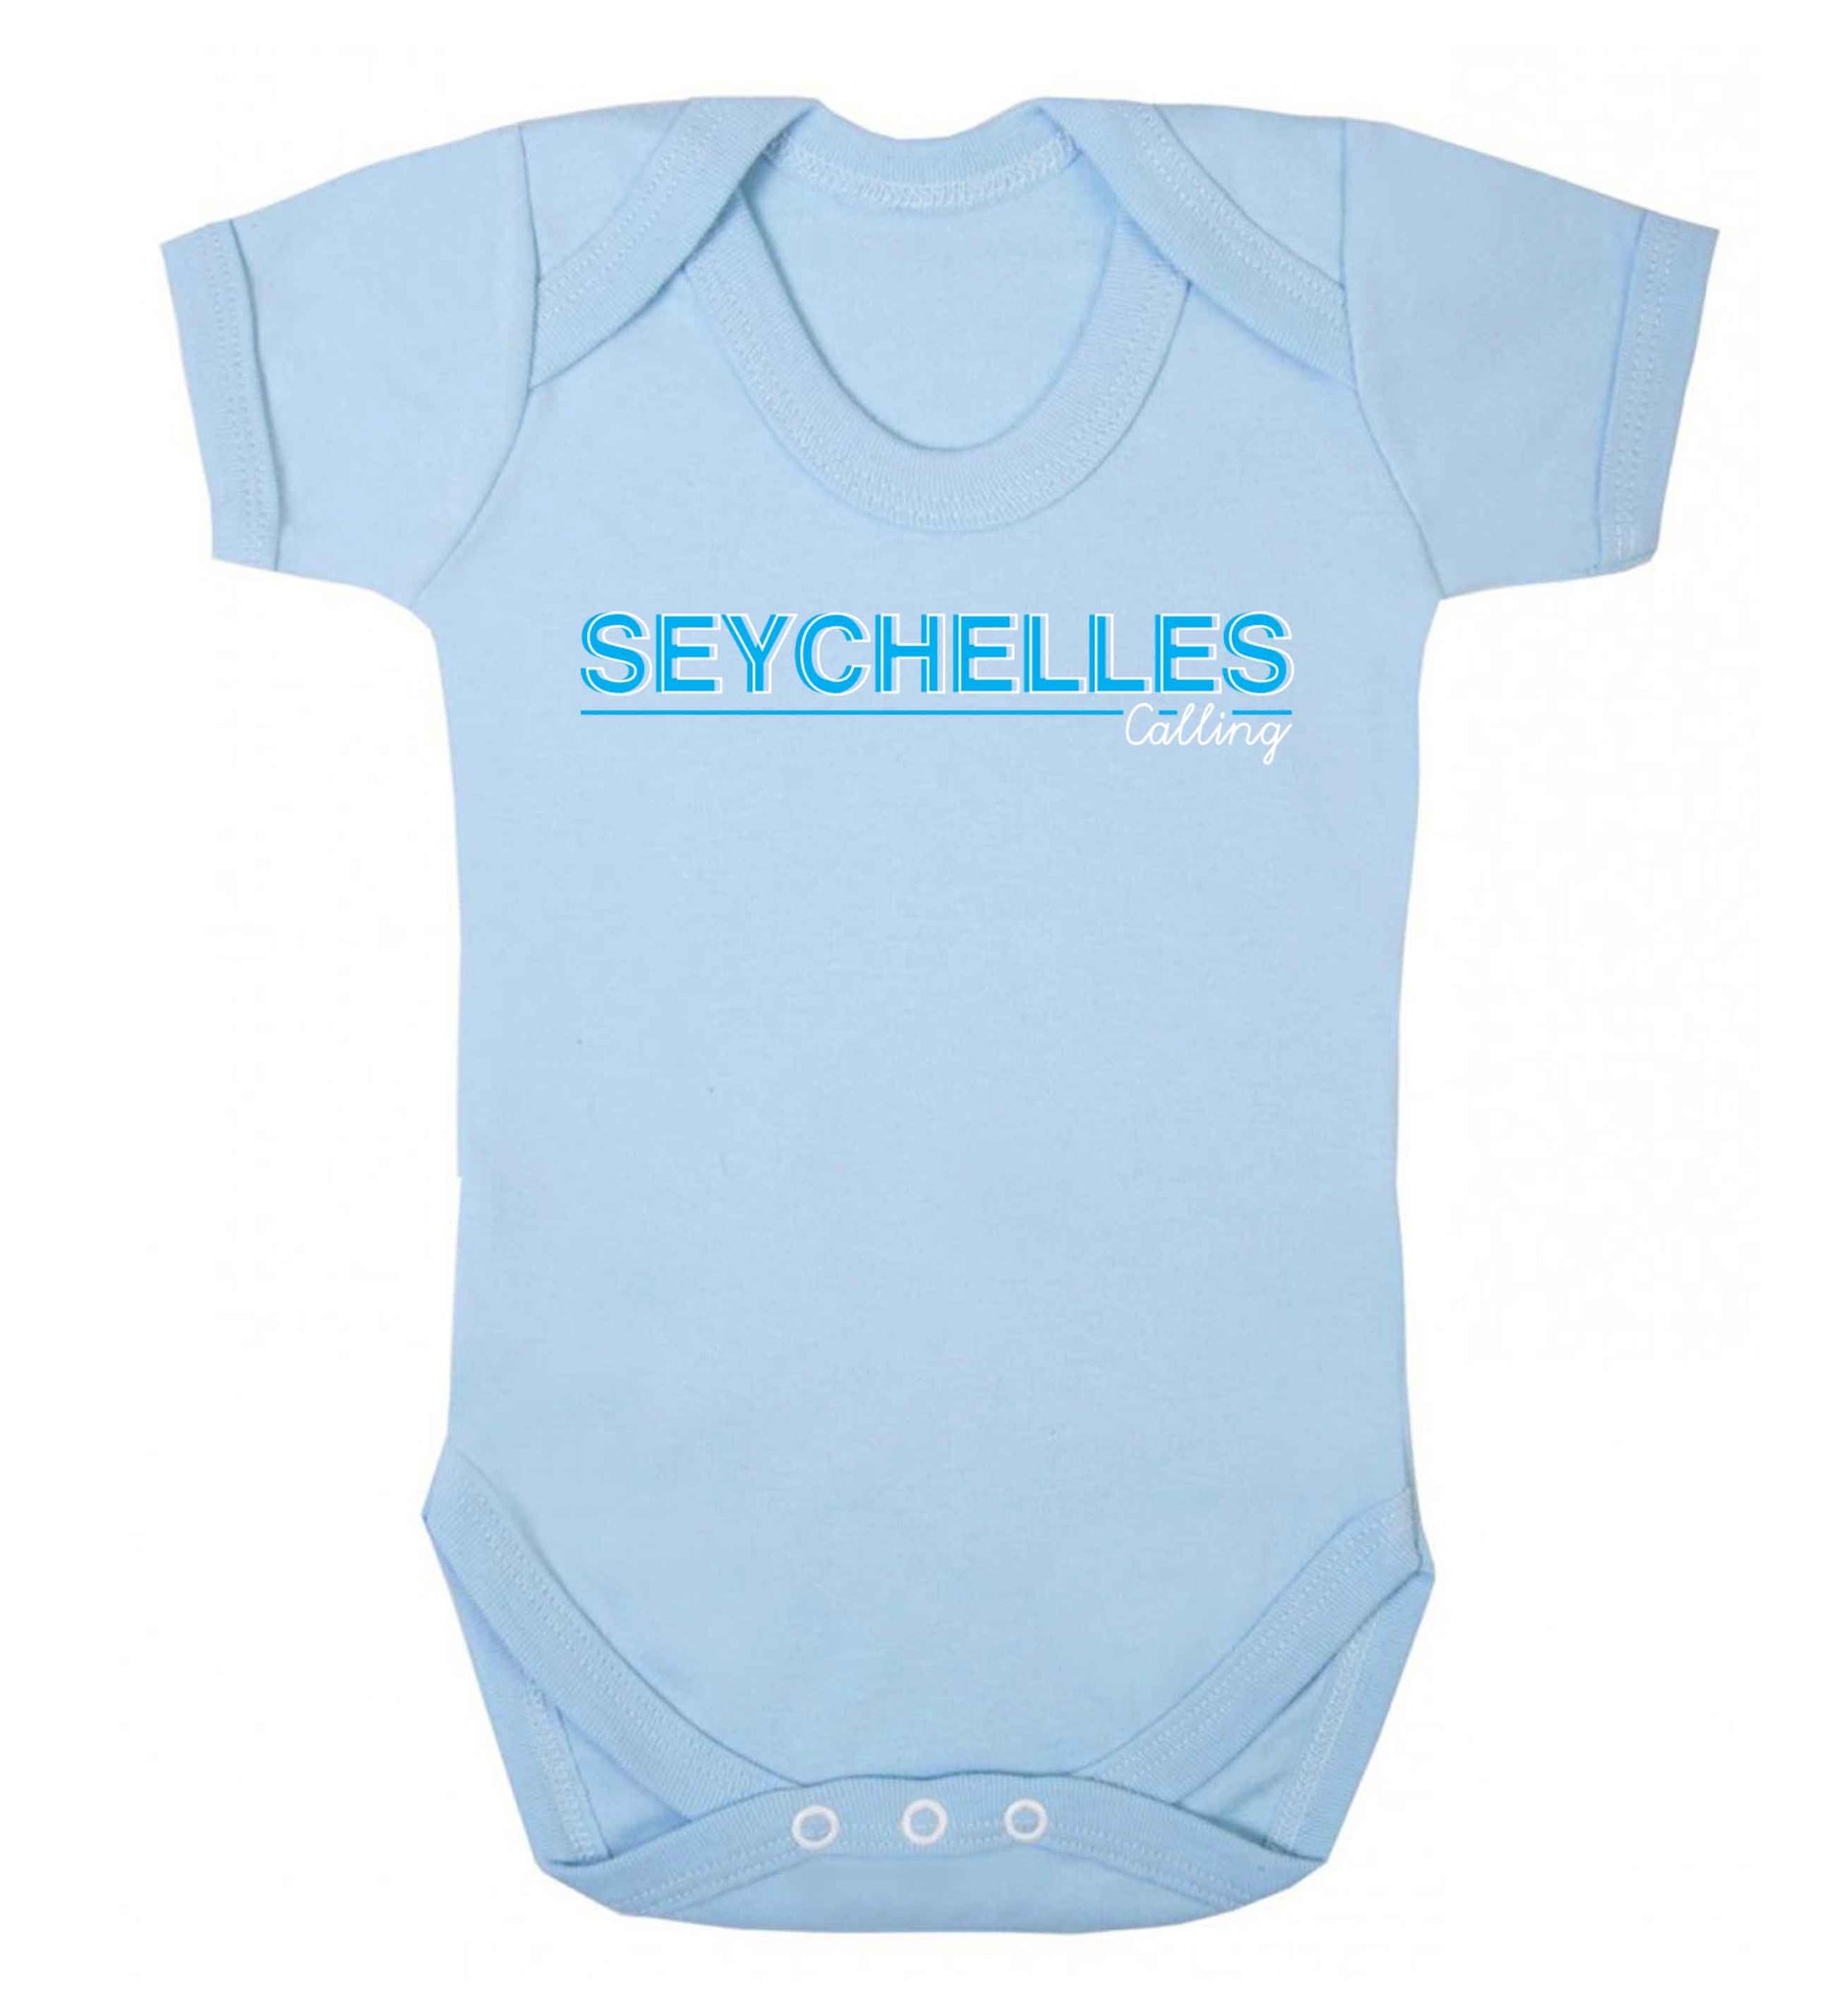 Seychelles calling Baby Vest pale blue 18-24 months